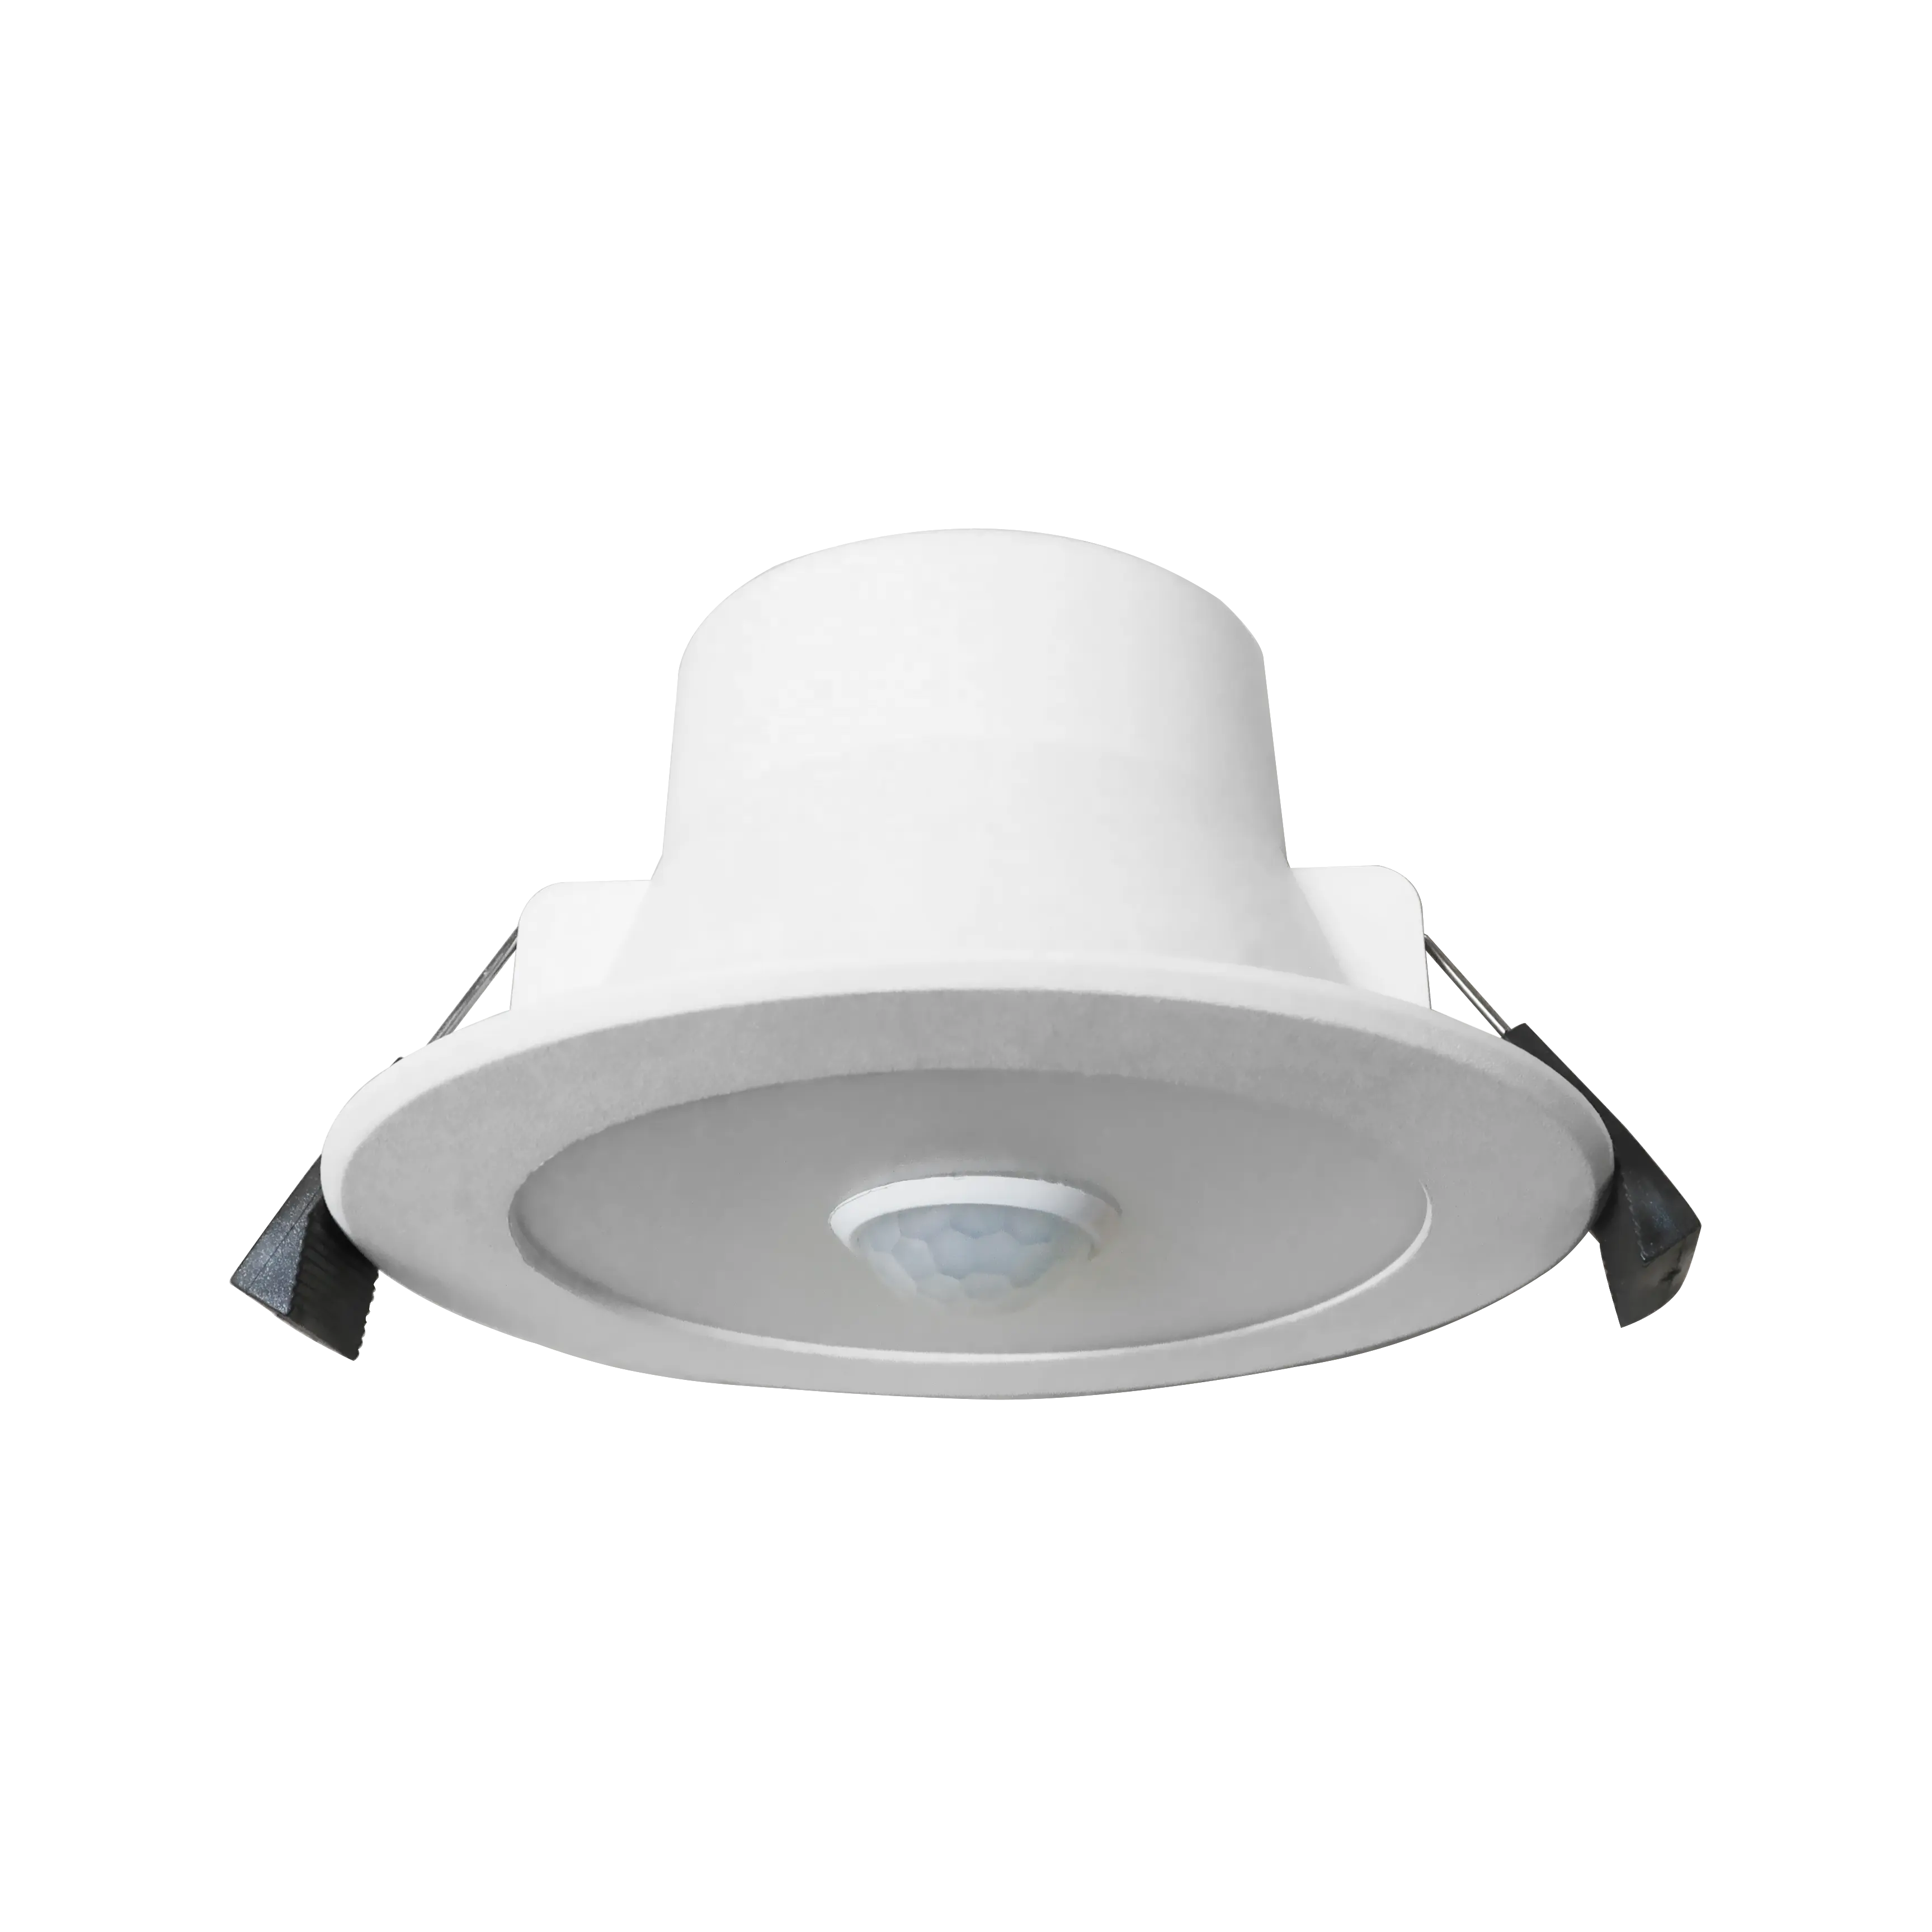 Downlight LED Détecteur de mouvement PIR intérieur 8/9W Micro-ondes et infrarouge Flat Design Tri-colour LUX switchable V-0 flamme rating lights